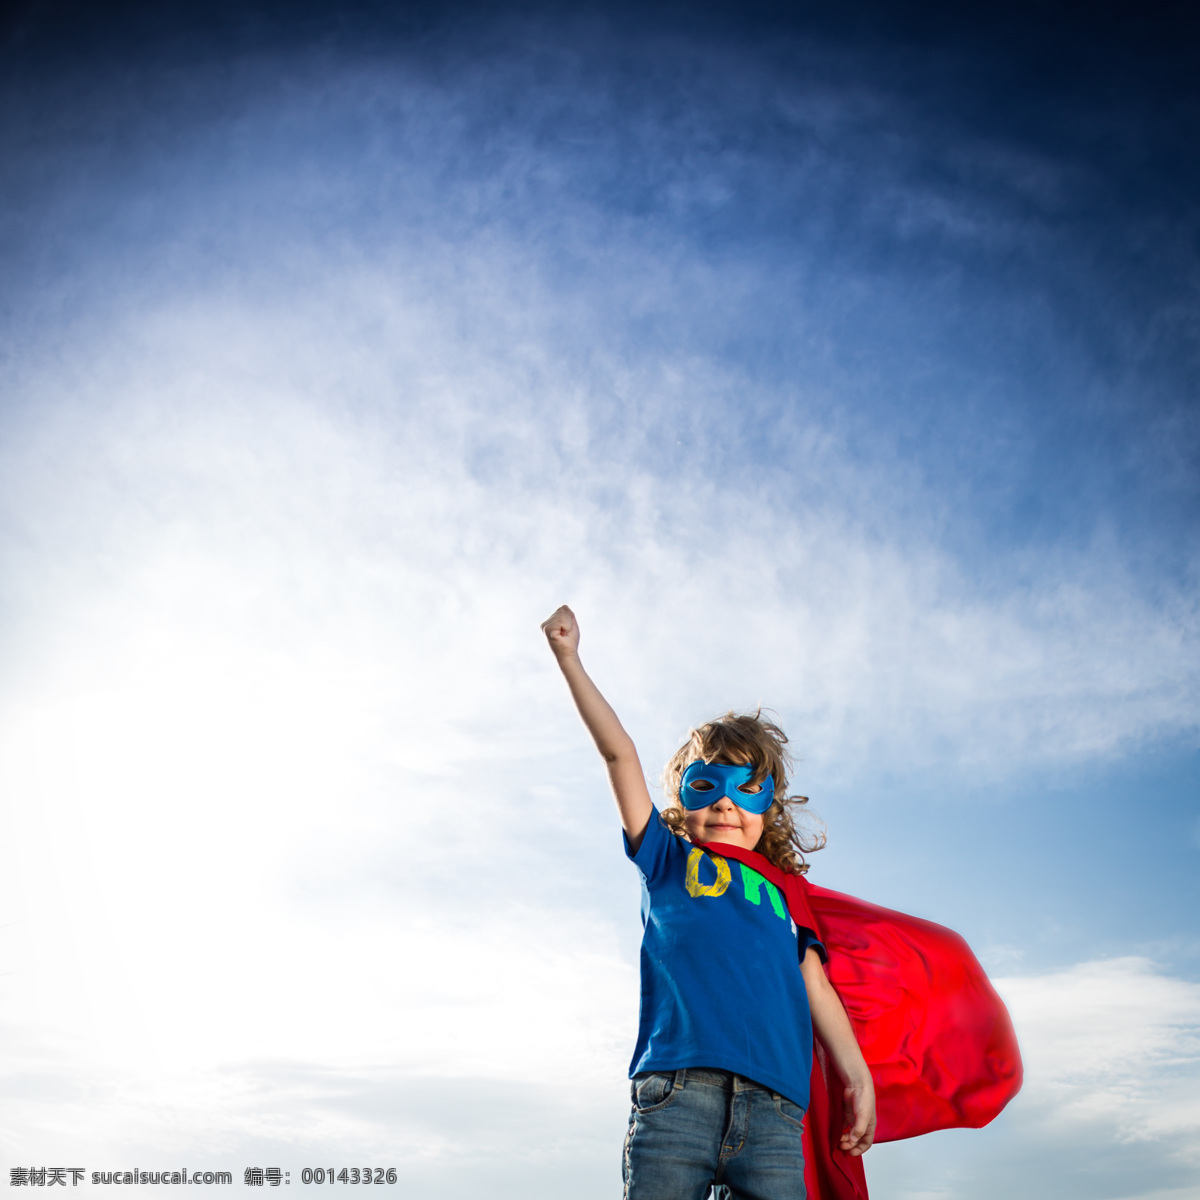 蓝天 下 儿童 拳头 戴面具的超人 小英雄 超级英雄 外国男孩 小男孩 儿童超人 披风 儿童图片 人物图片